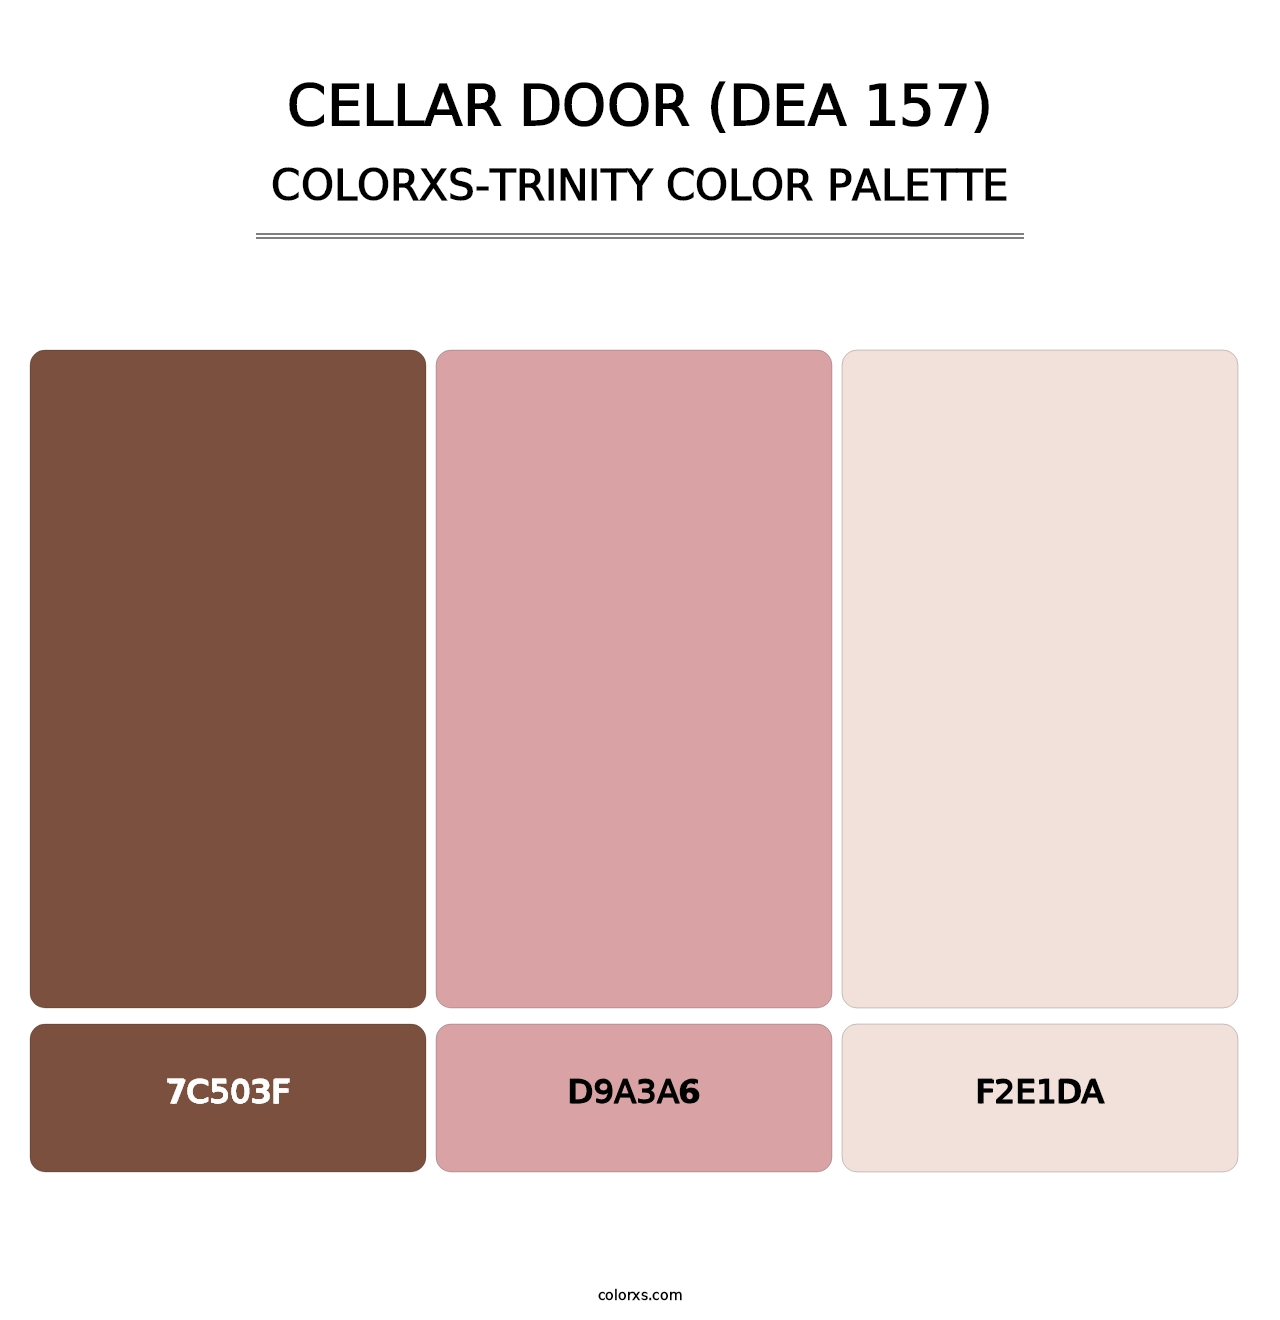 Cellar Door (DEA 157) - Colorxs Trinity Palette